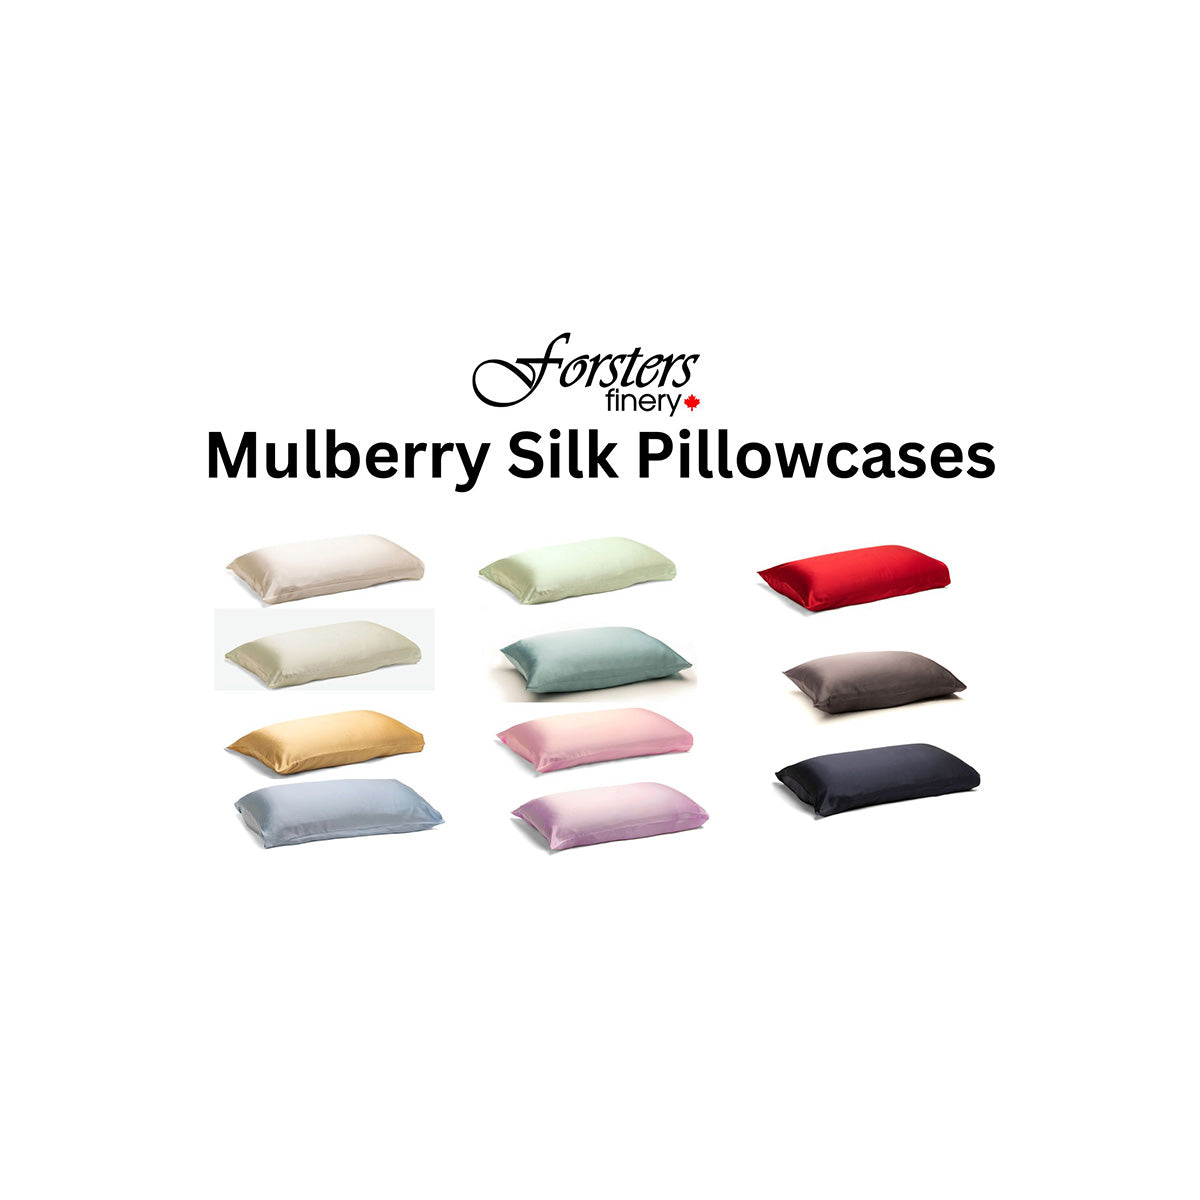 All Silk Pillowcases